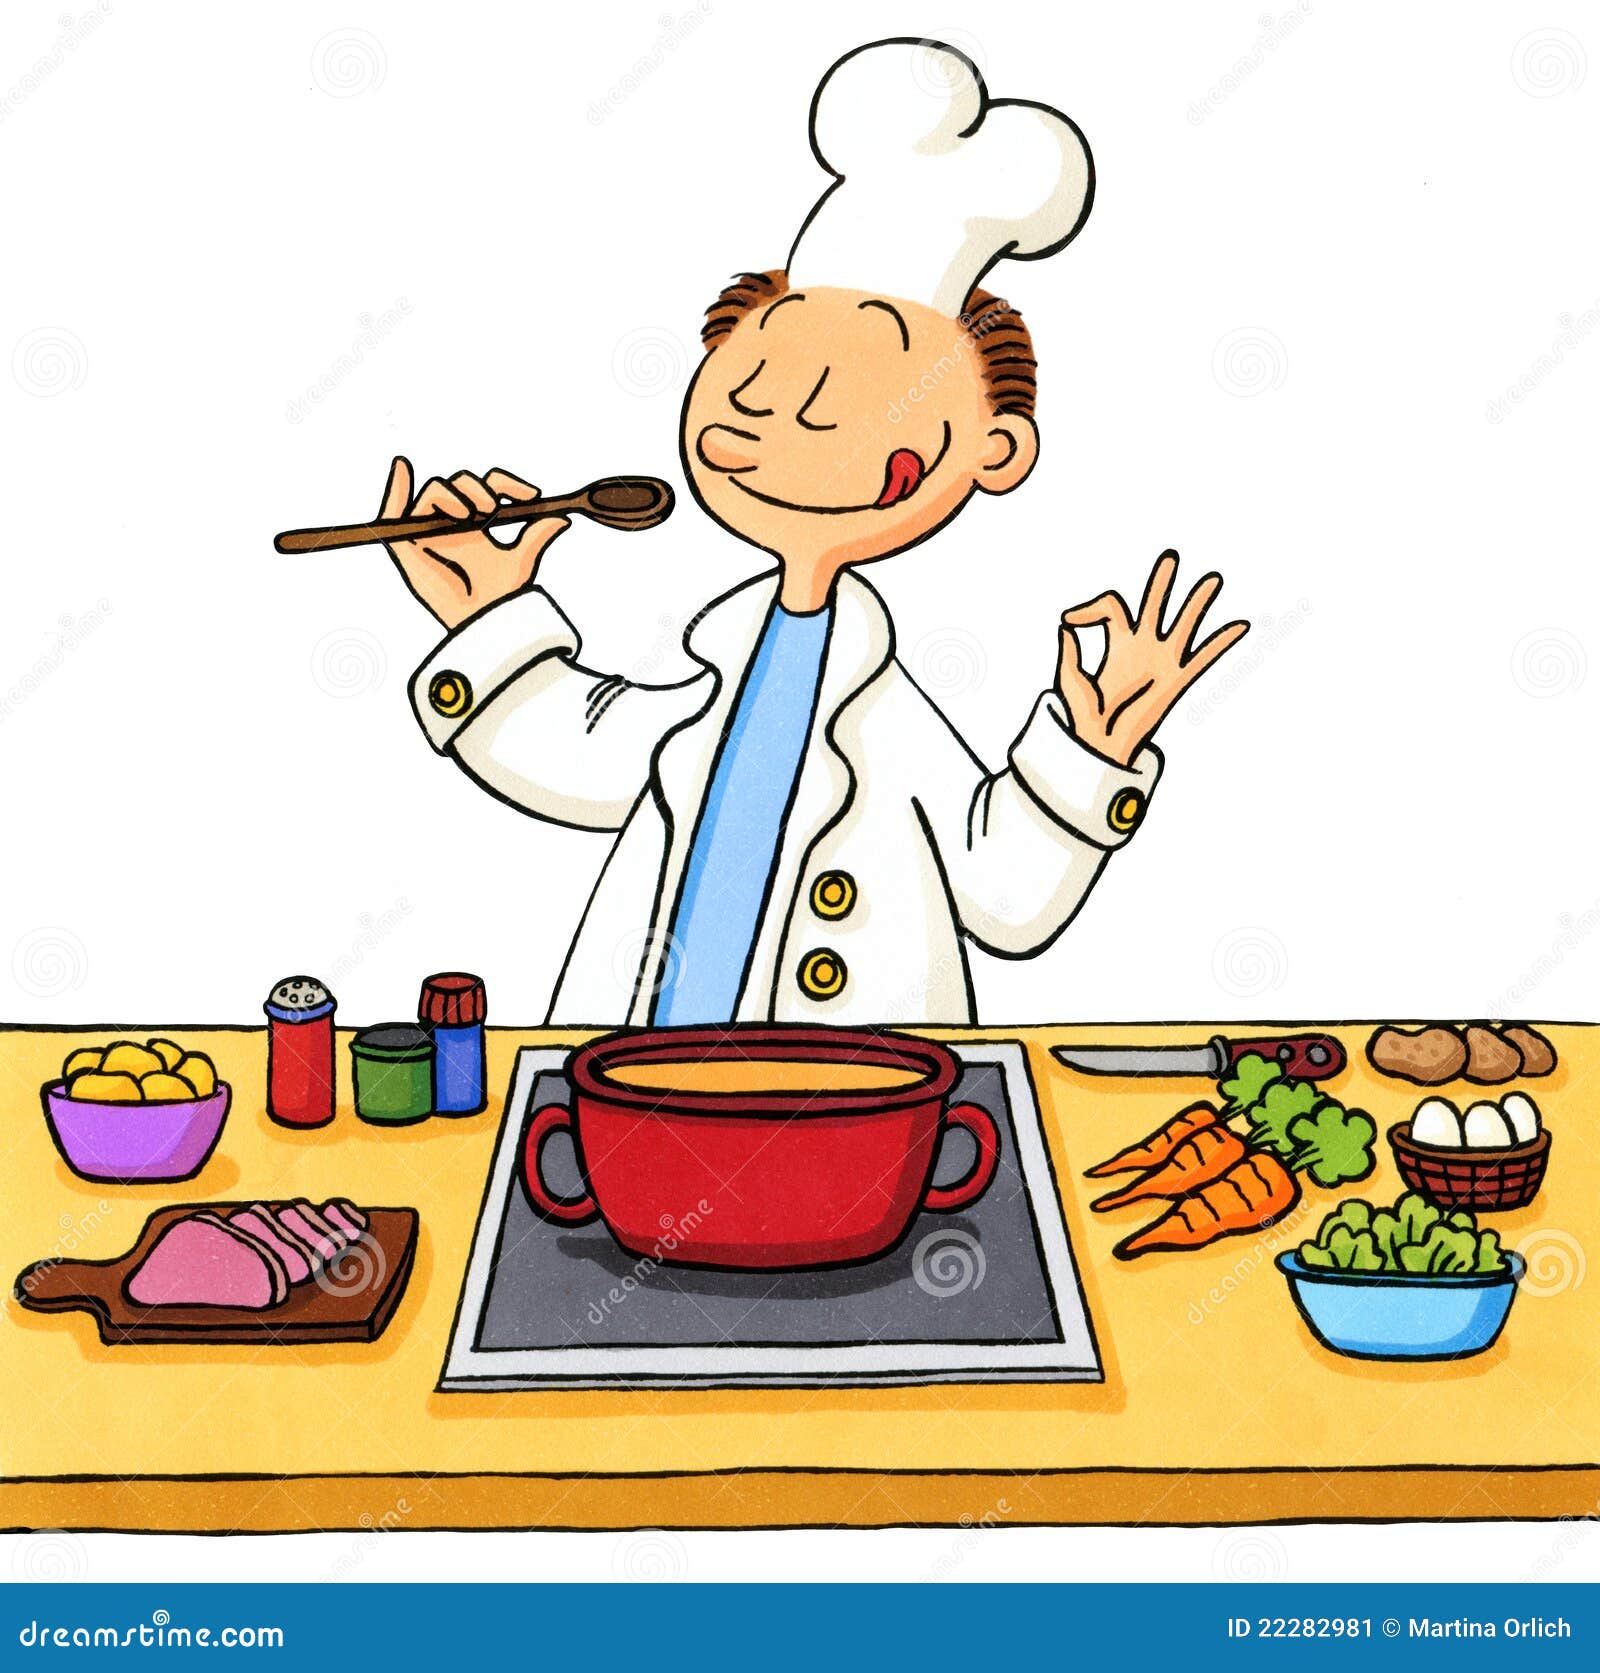 Resultat d'imatges per a "cooking cartoon"